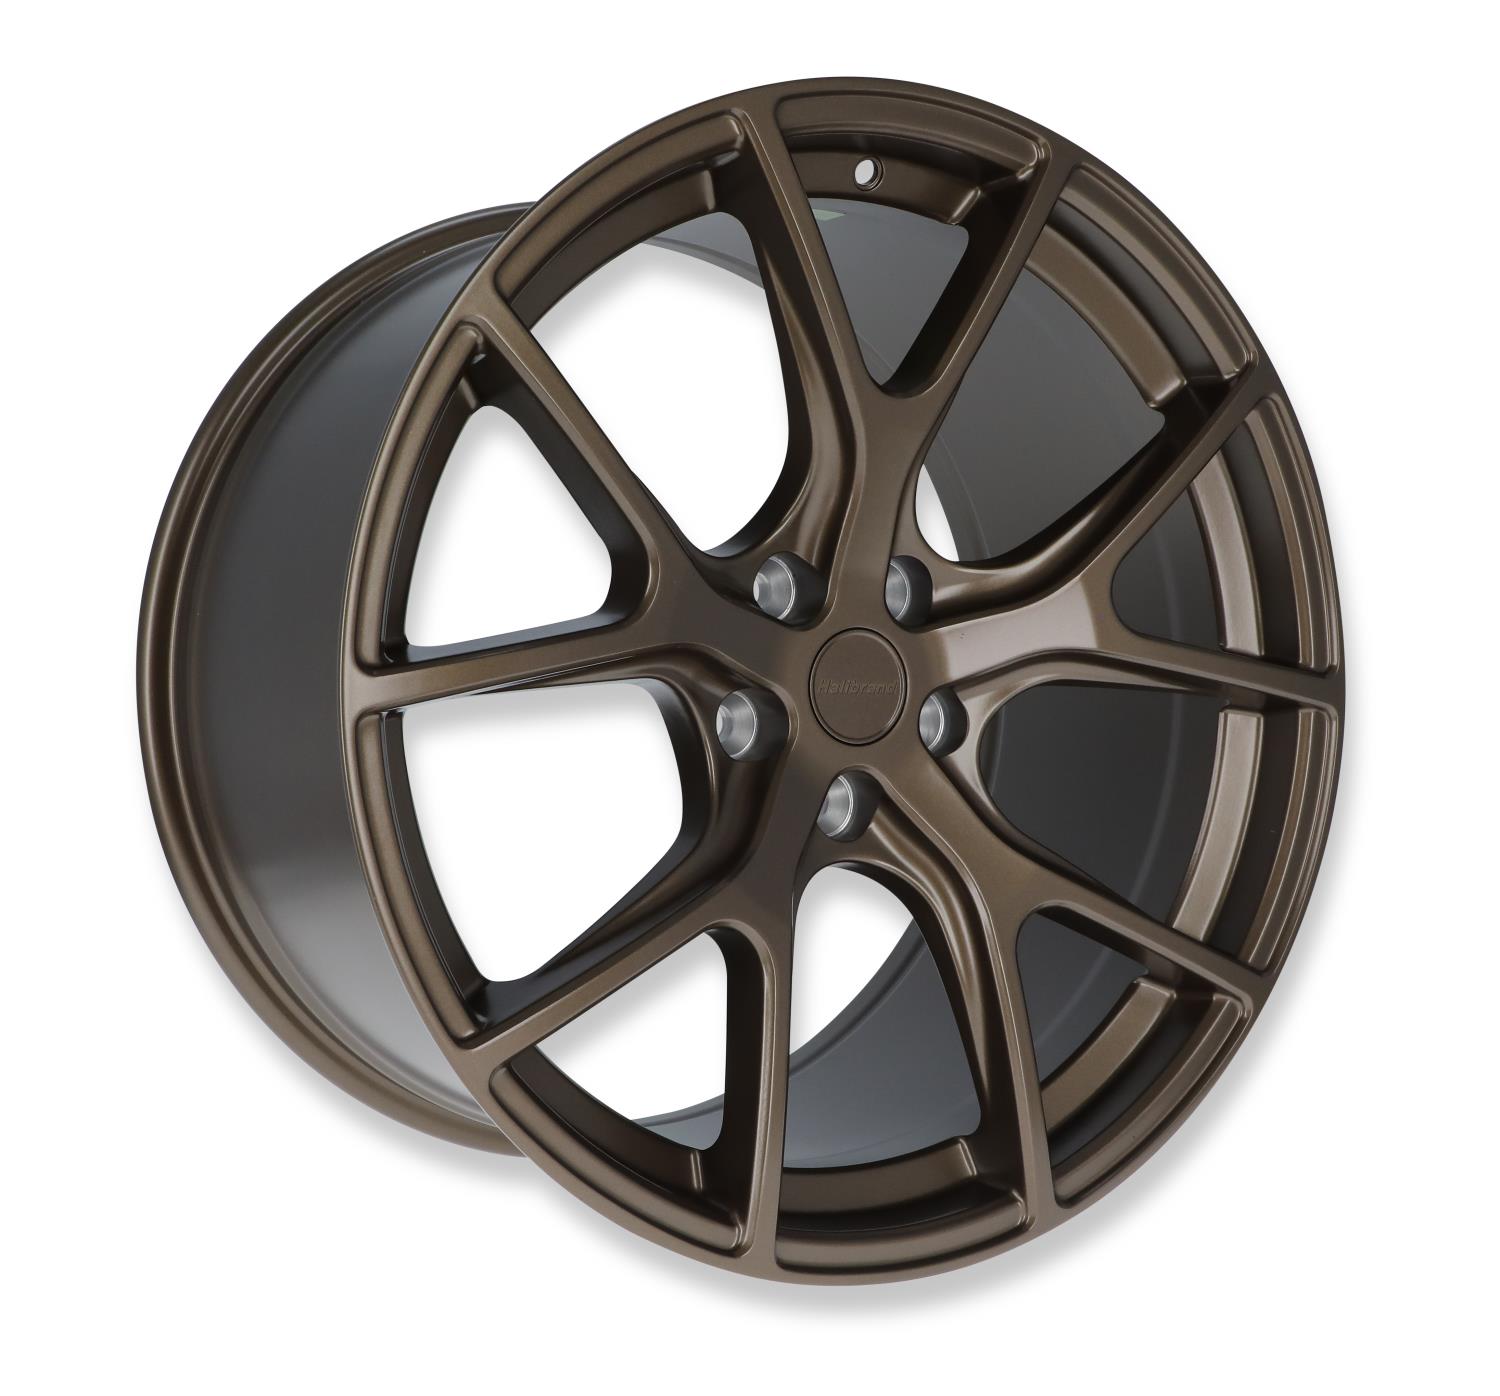 Split-Spoke Rear Wheel, Size: 20x11", Bolt Pattern: 5x4.5", Backspace: 7.97" [Semi Gloss Bronze]